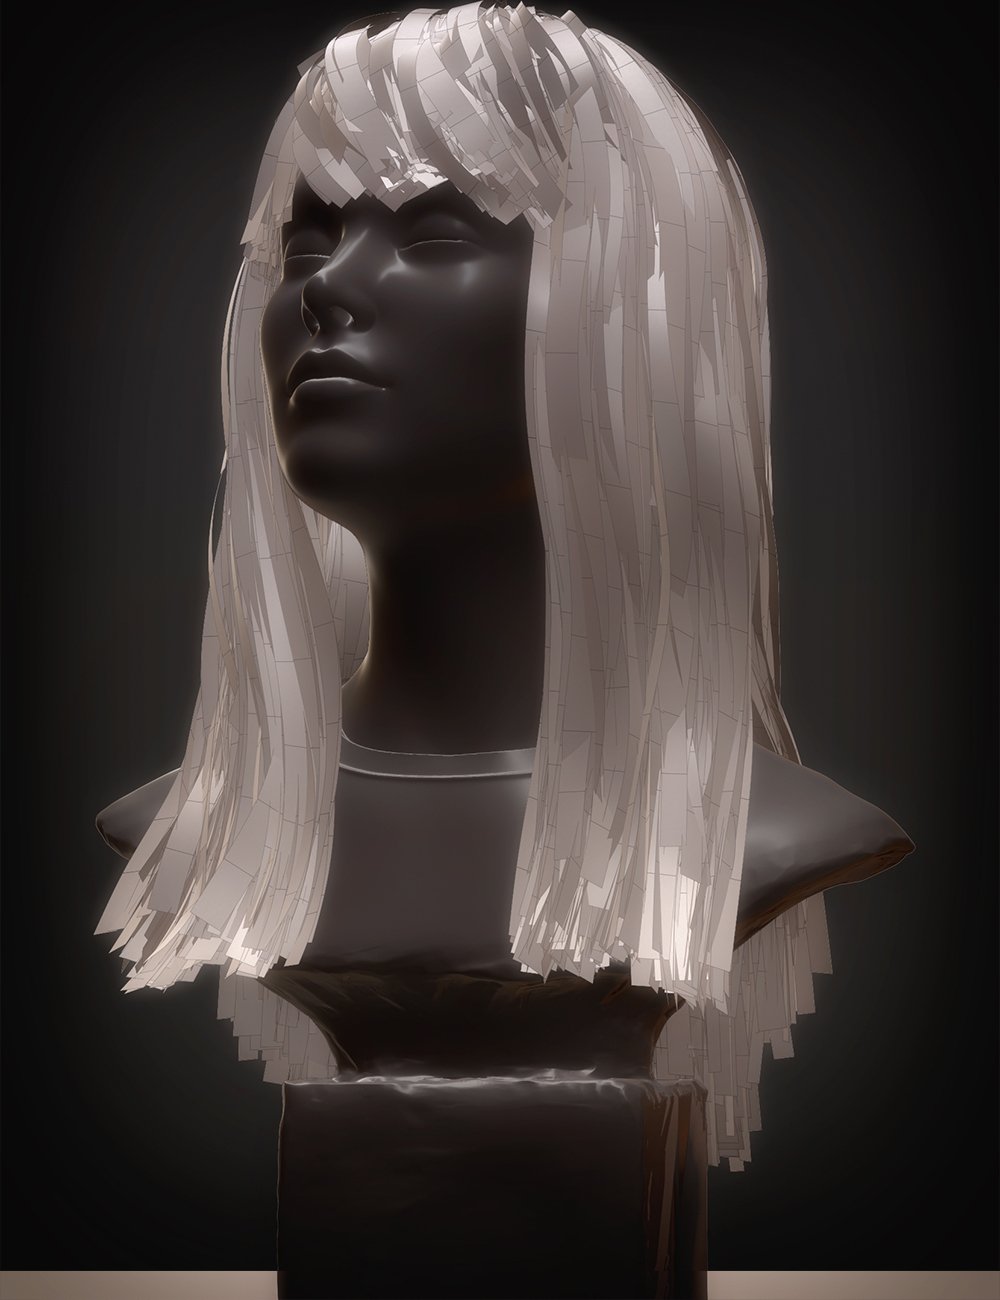 dForce Nirv Straight Long Hair for Genesis 8 and Genesis 8.1 Females by: Nirvana, 3D Models by Daz 3D